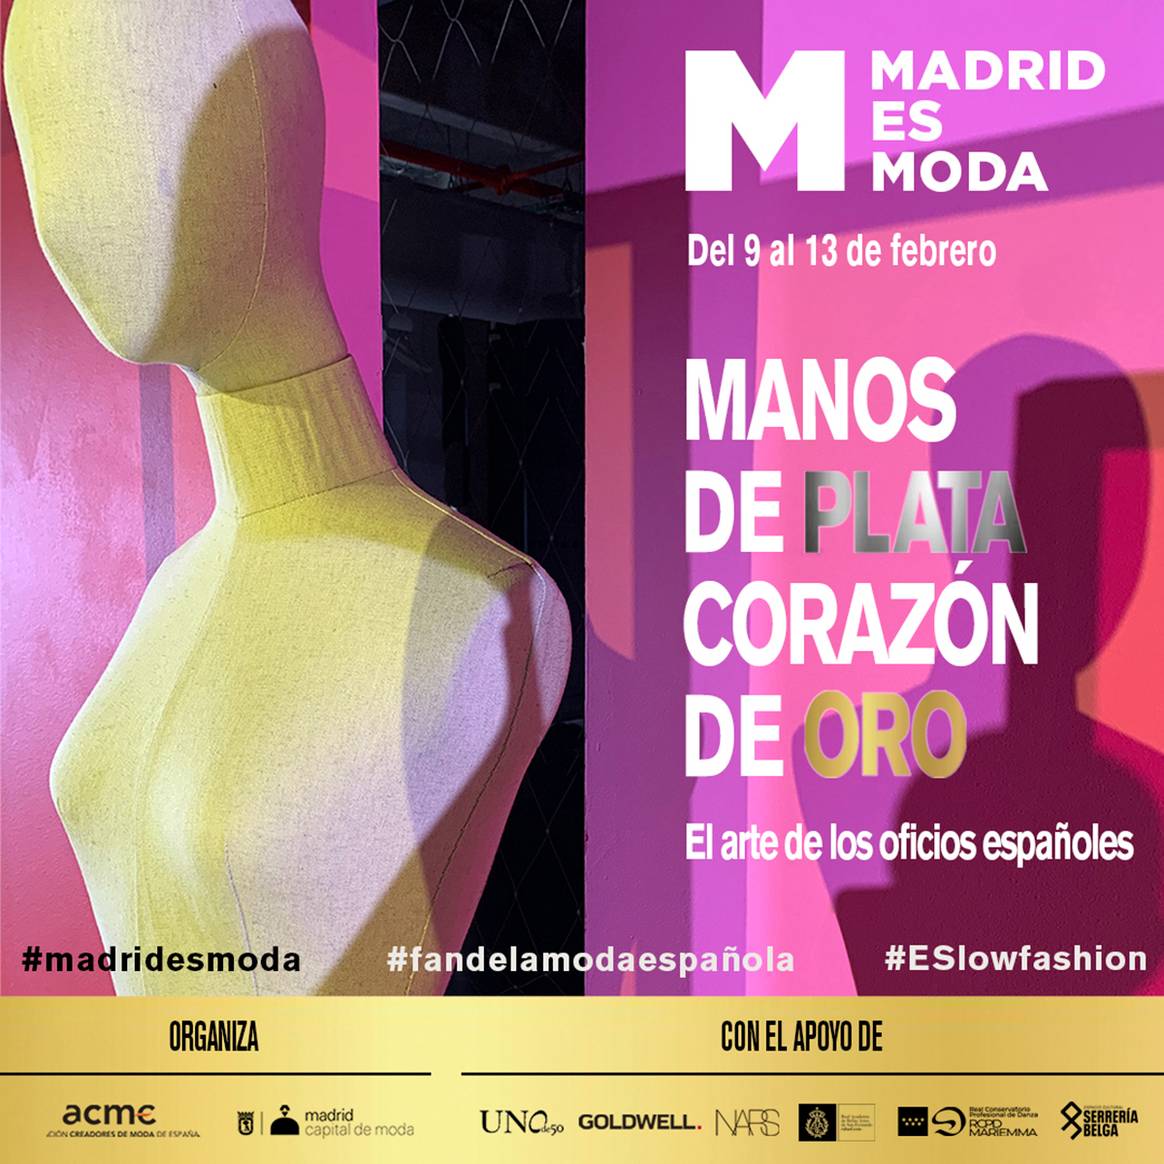 Photo Credits: Cartel de esta nueva edición de febrero de 2023 de Madrid es Moda. Material de cortesía por Madrid es Moda.